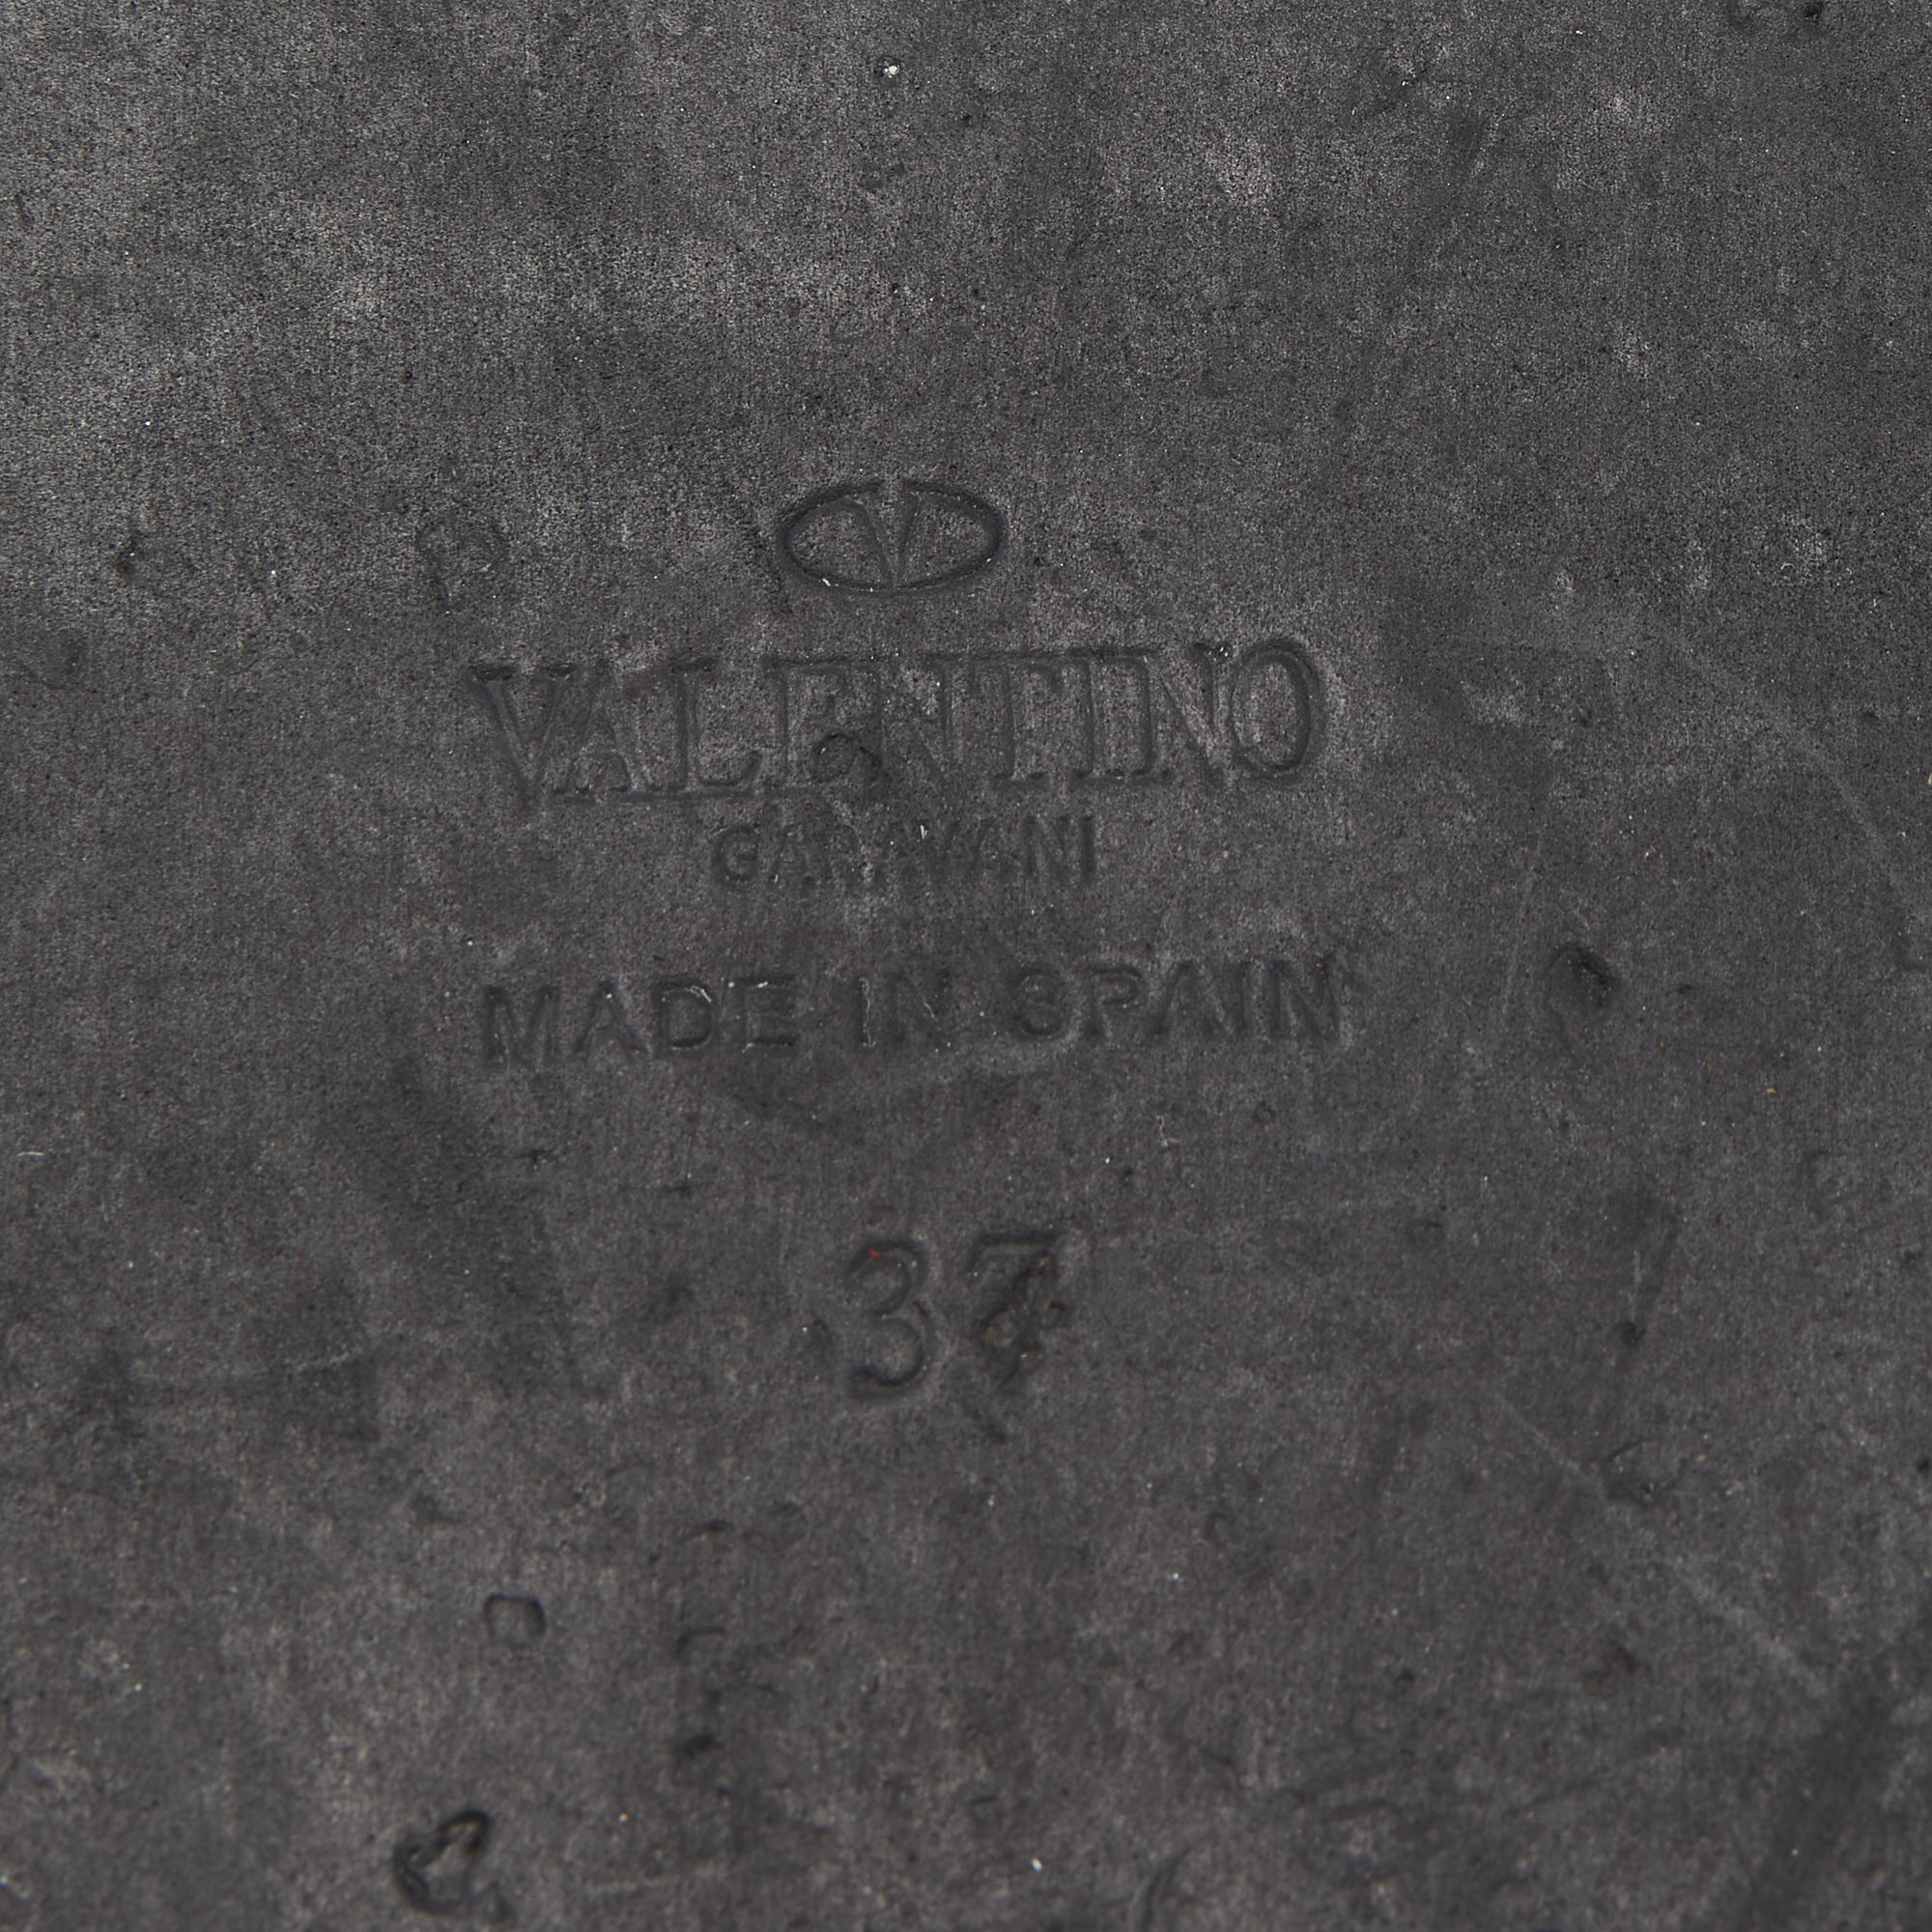 Valentino Dark Red Suede Roman Stud Espadrille Thong Sandals Size 37